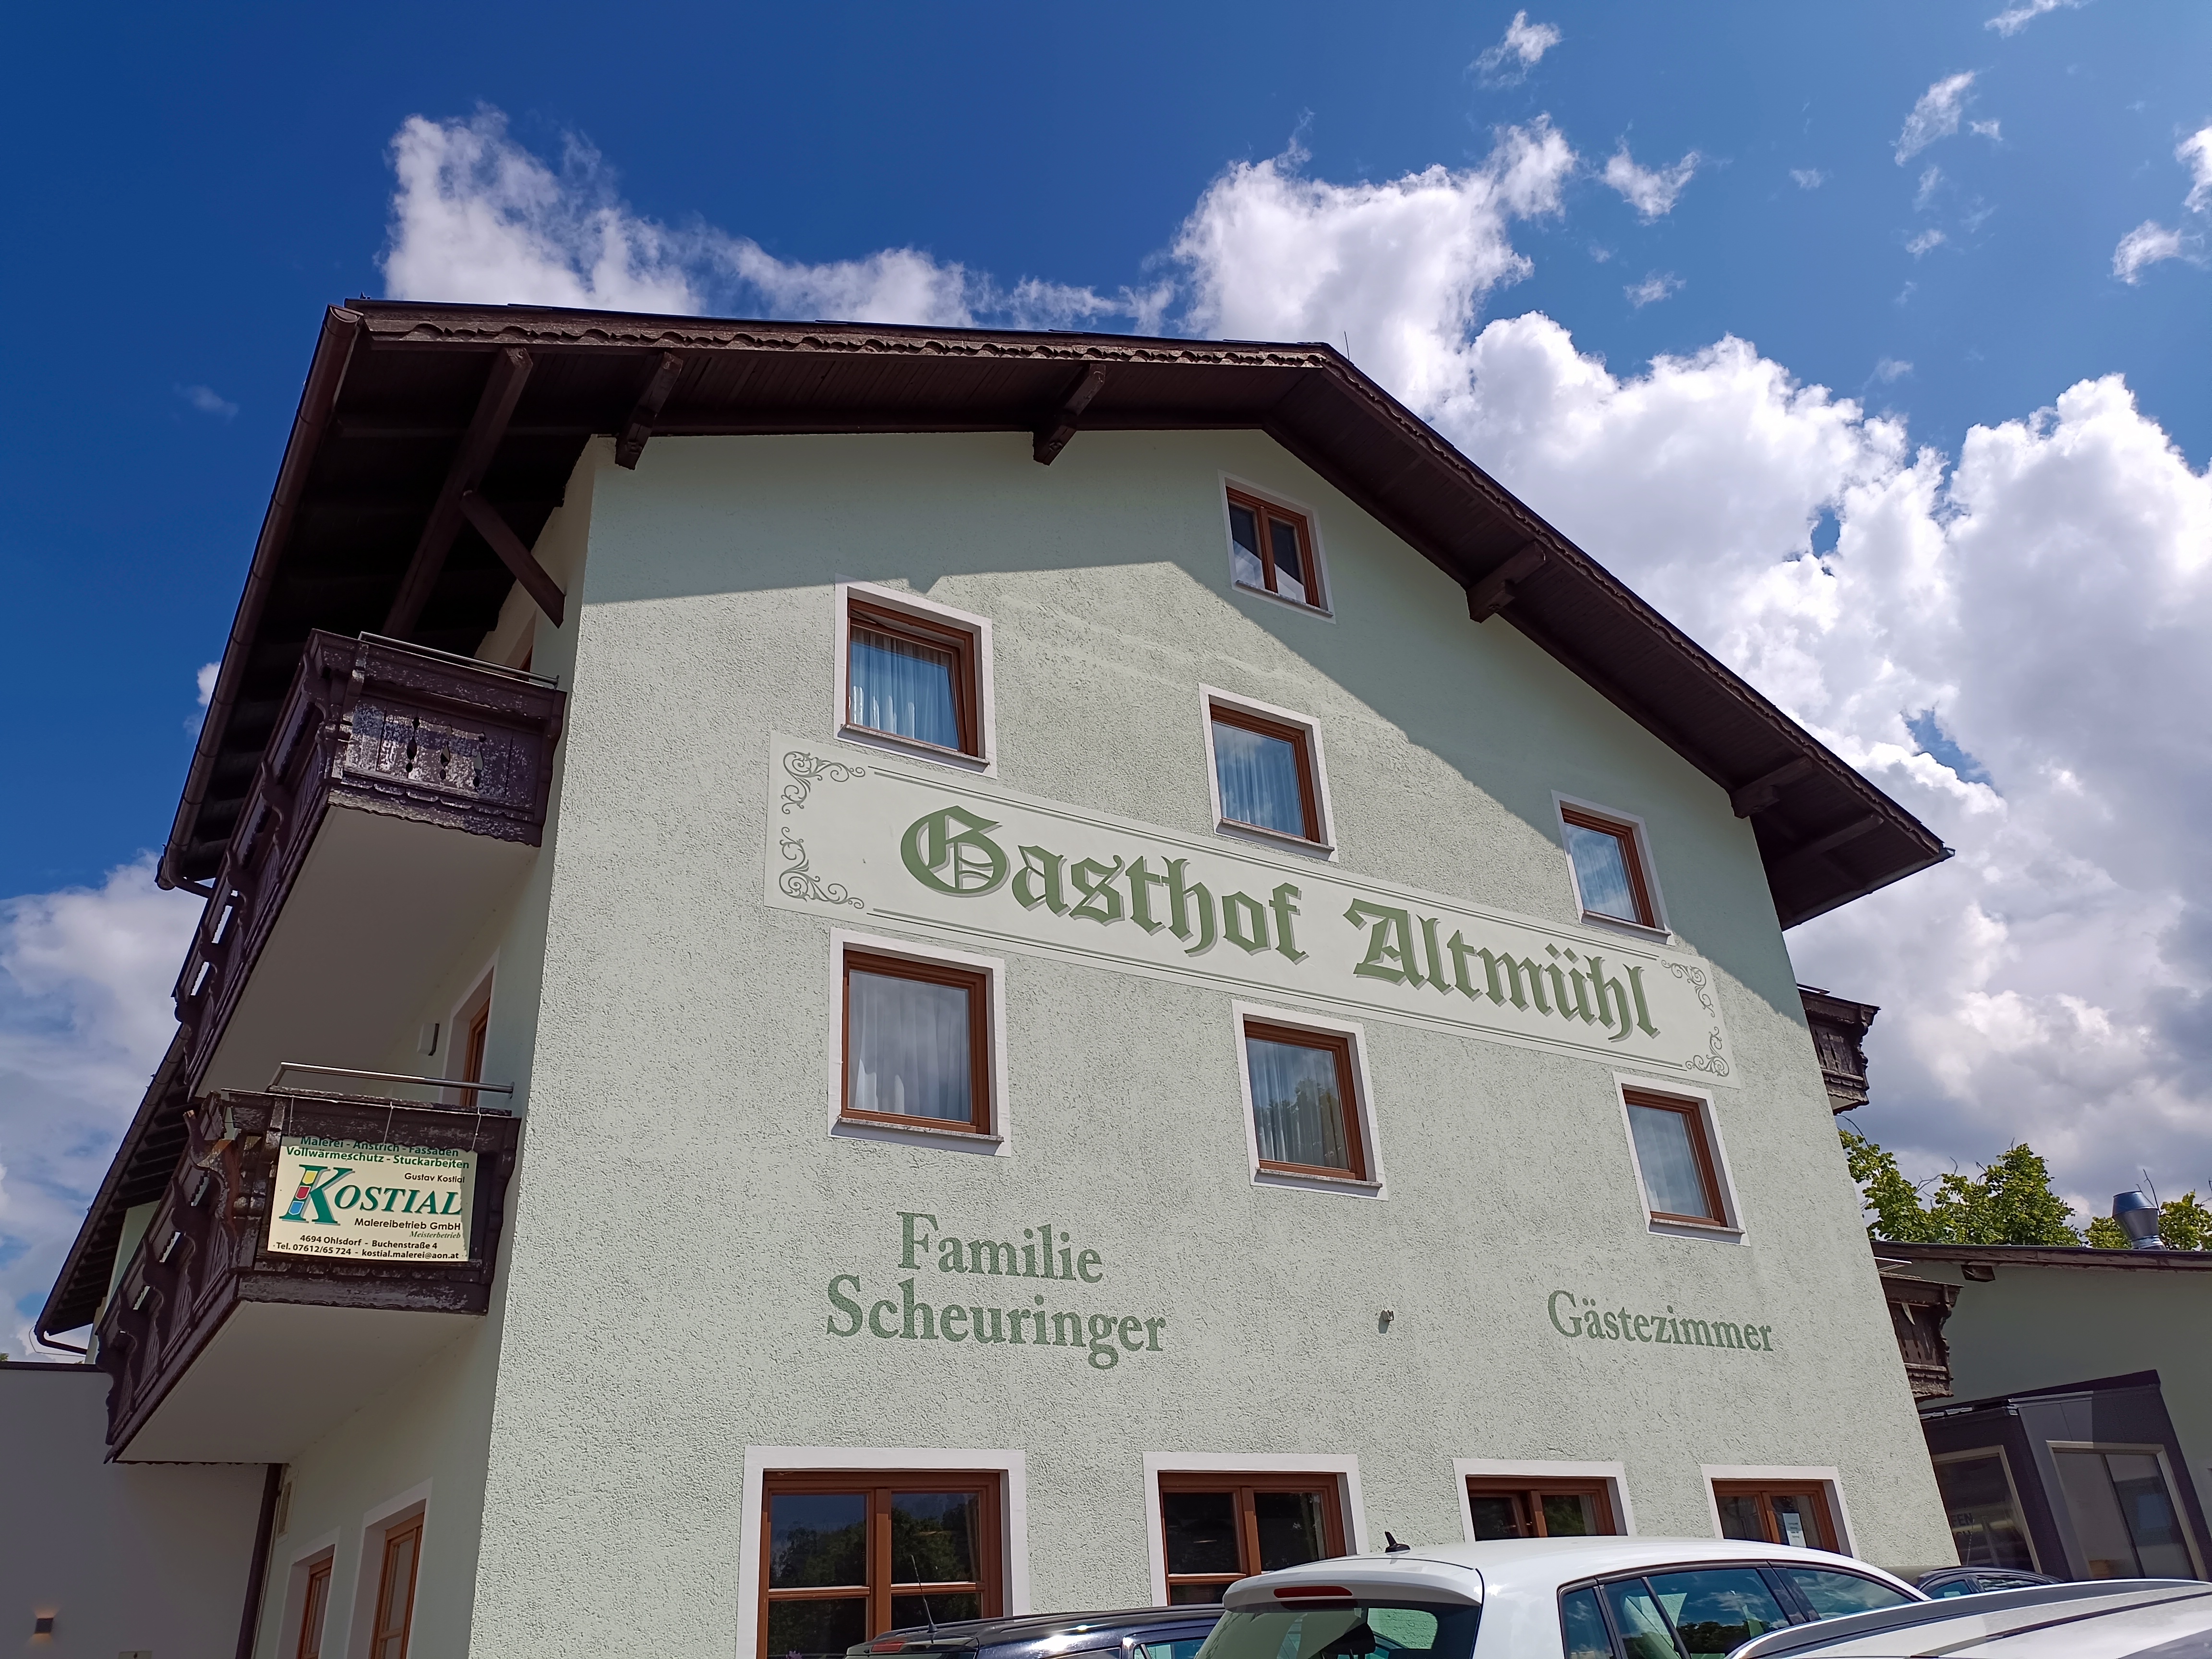 Gasthof-Pension Altmühl in Gmunden